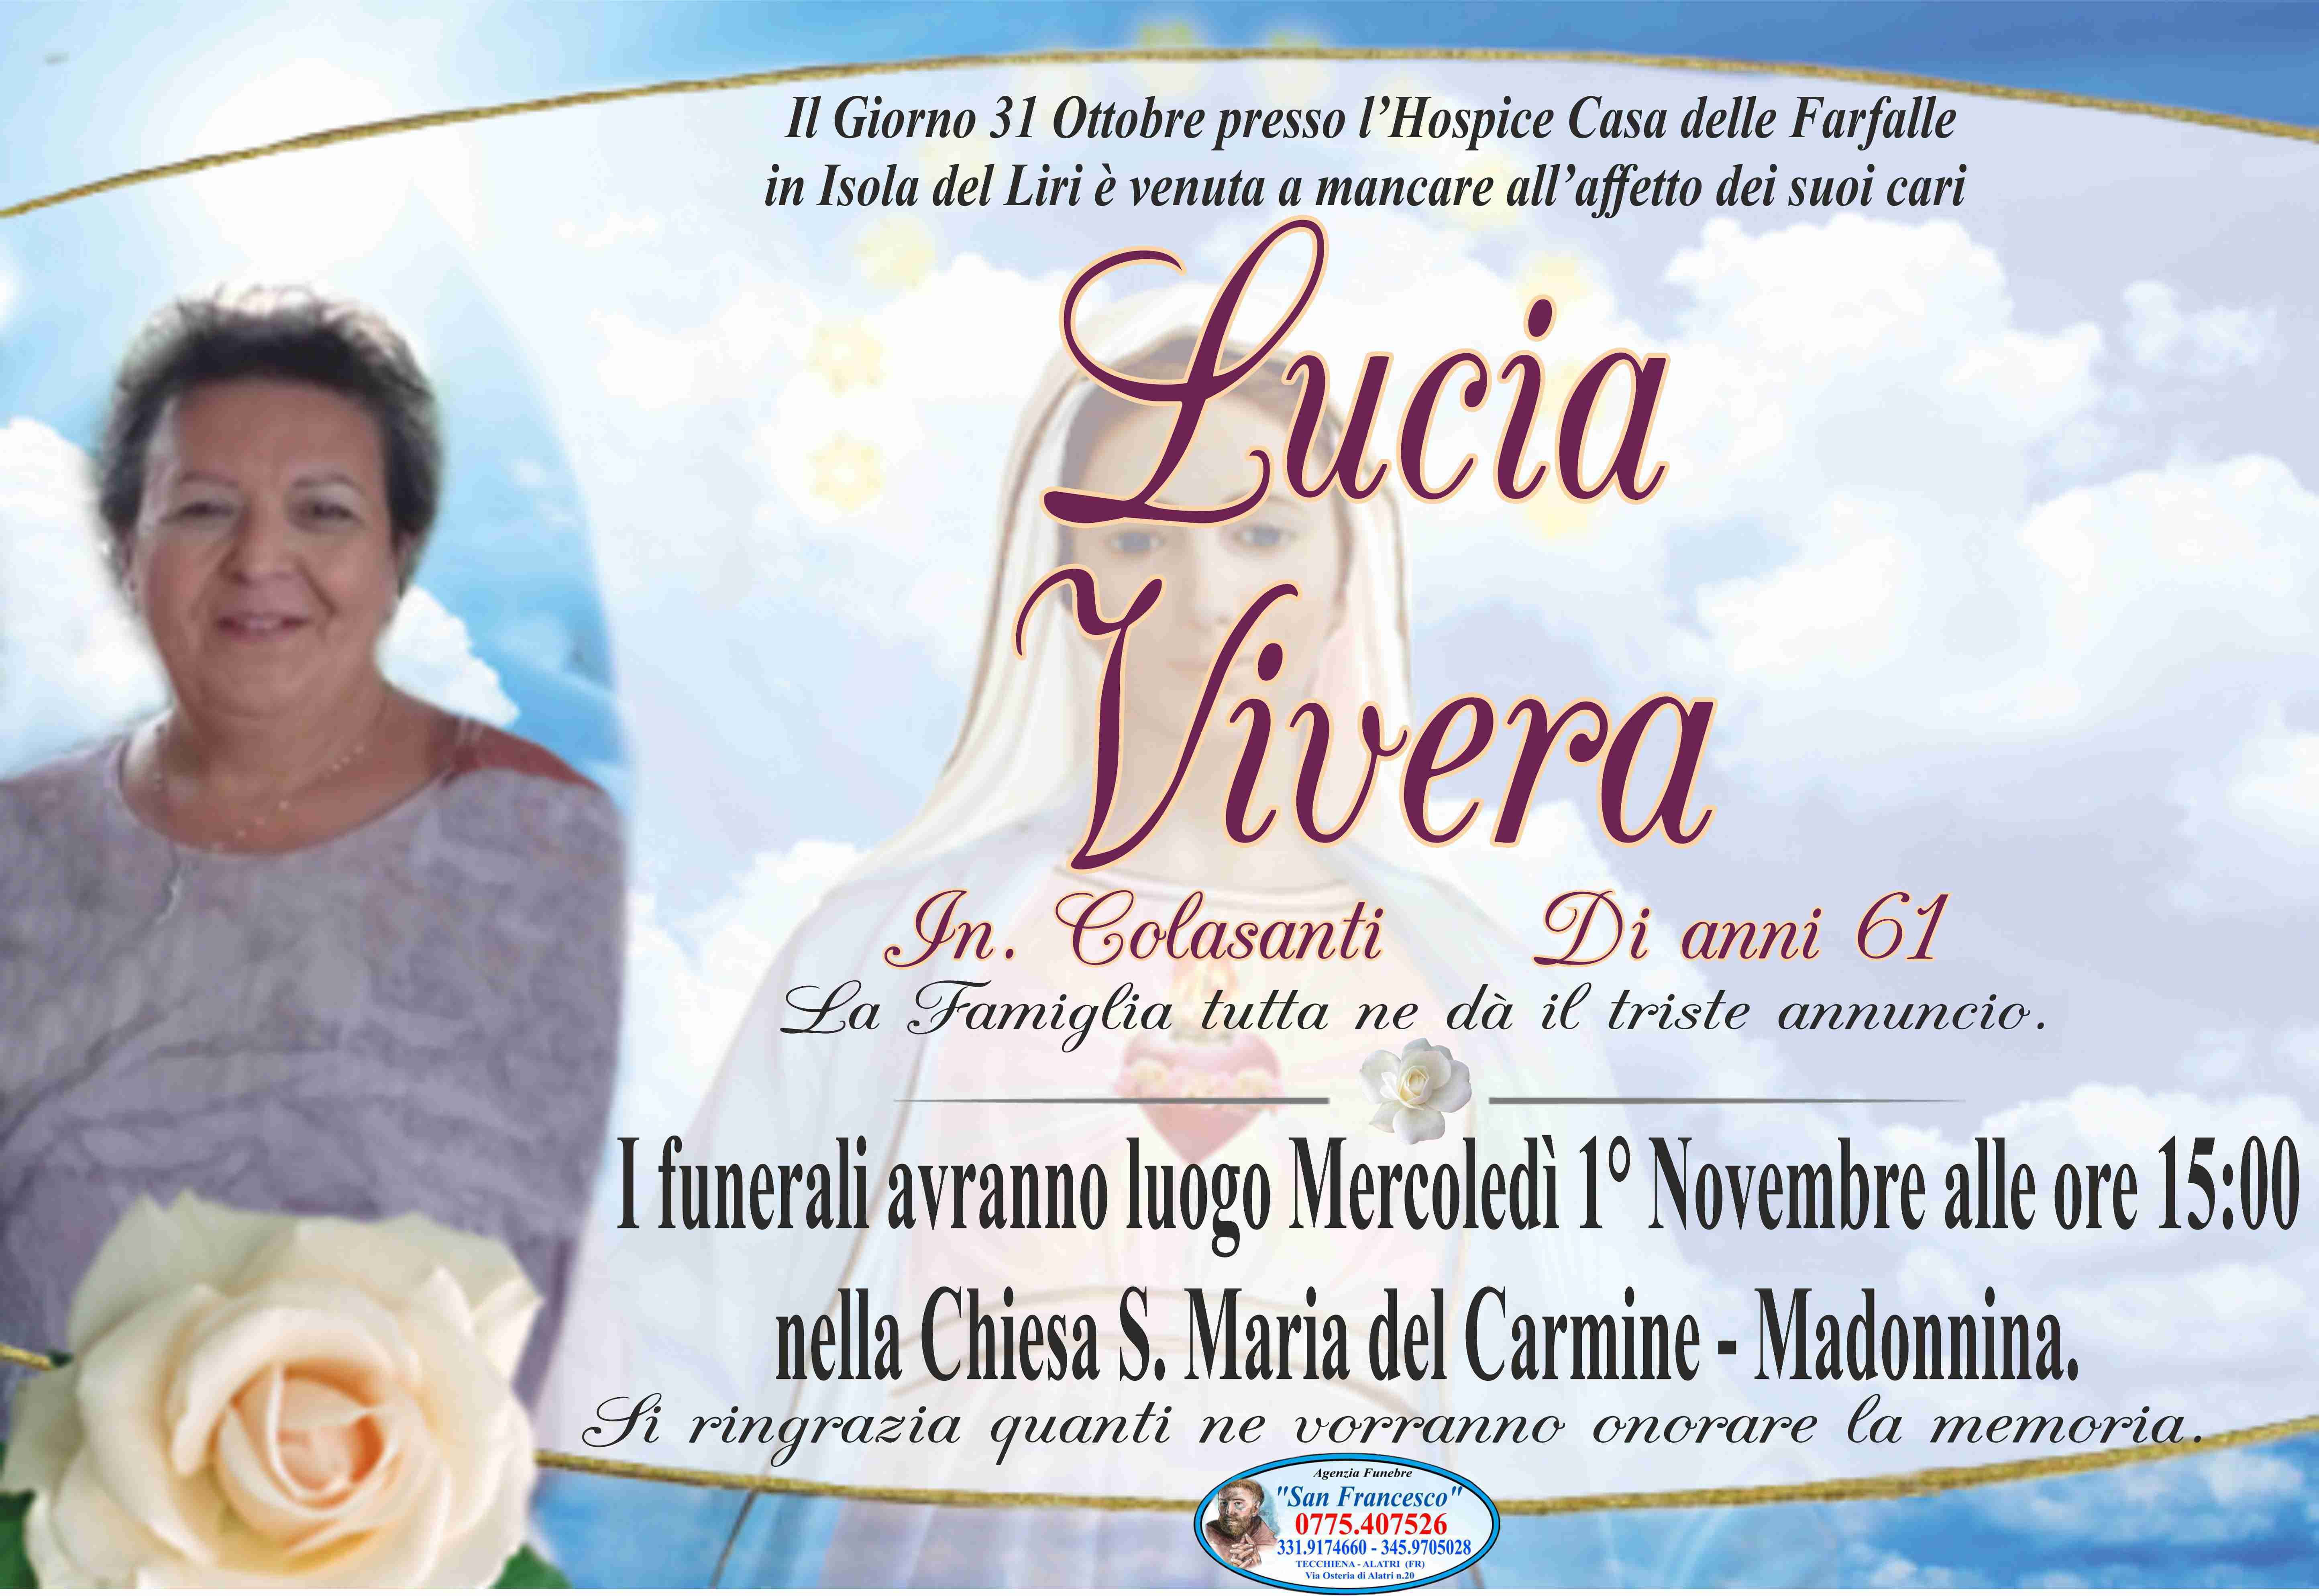 Lucia Vivera